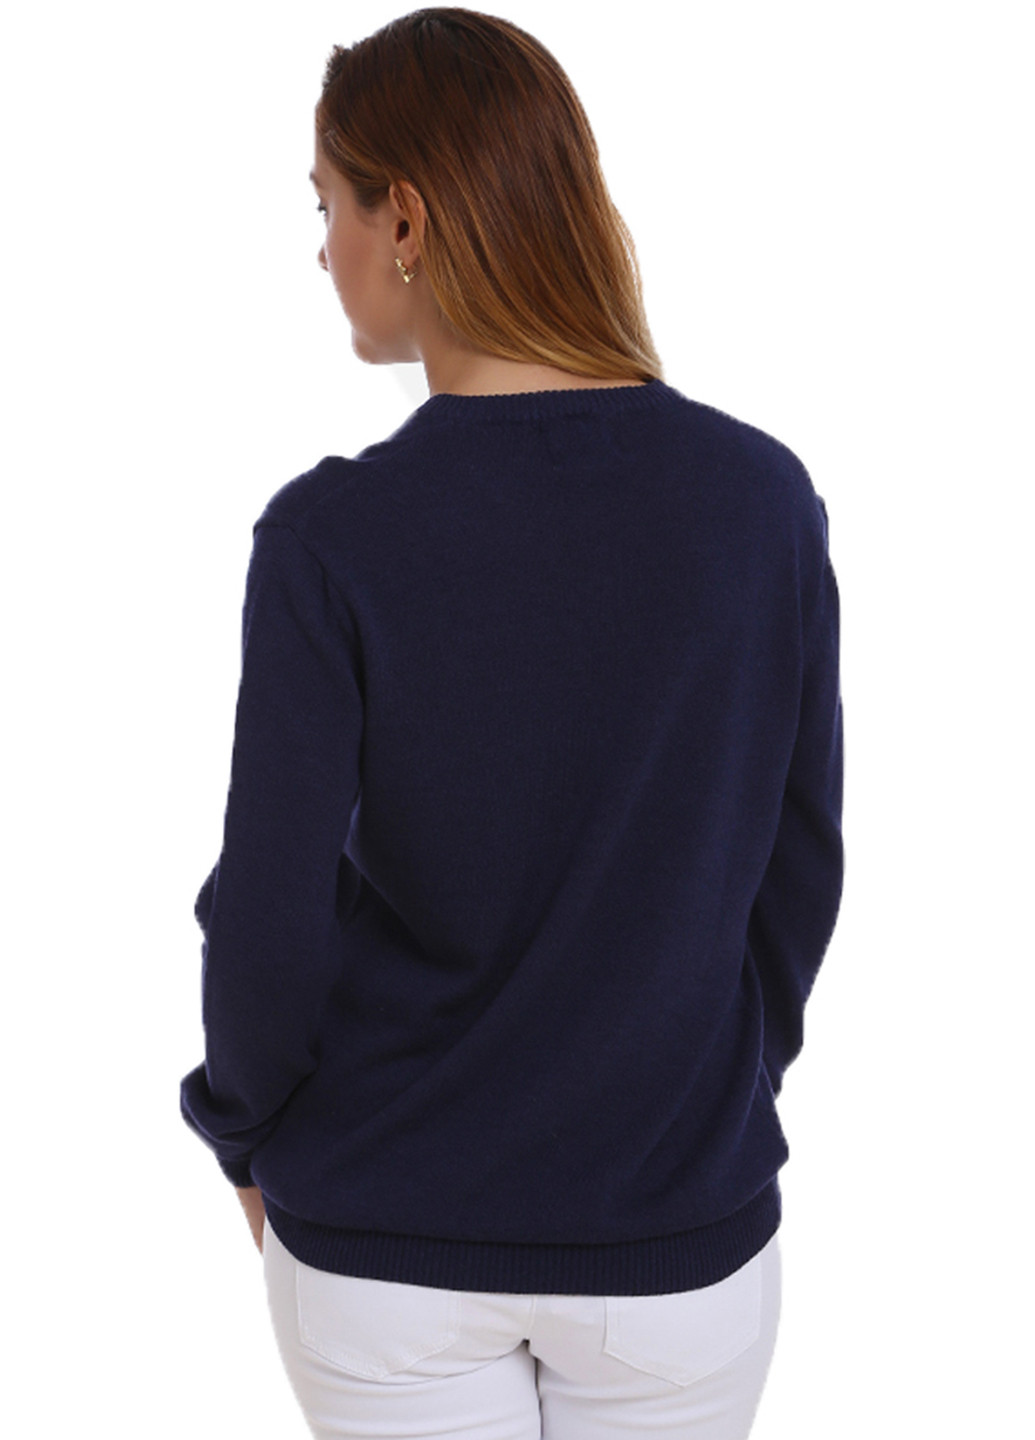 Темно-синий демисезонный пуловер пуловер Яavin